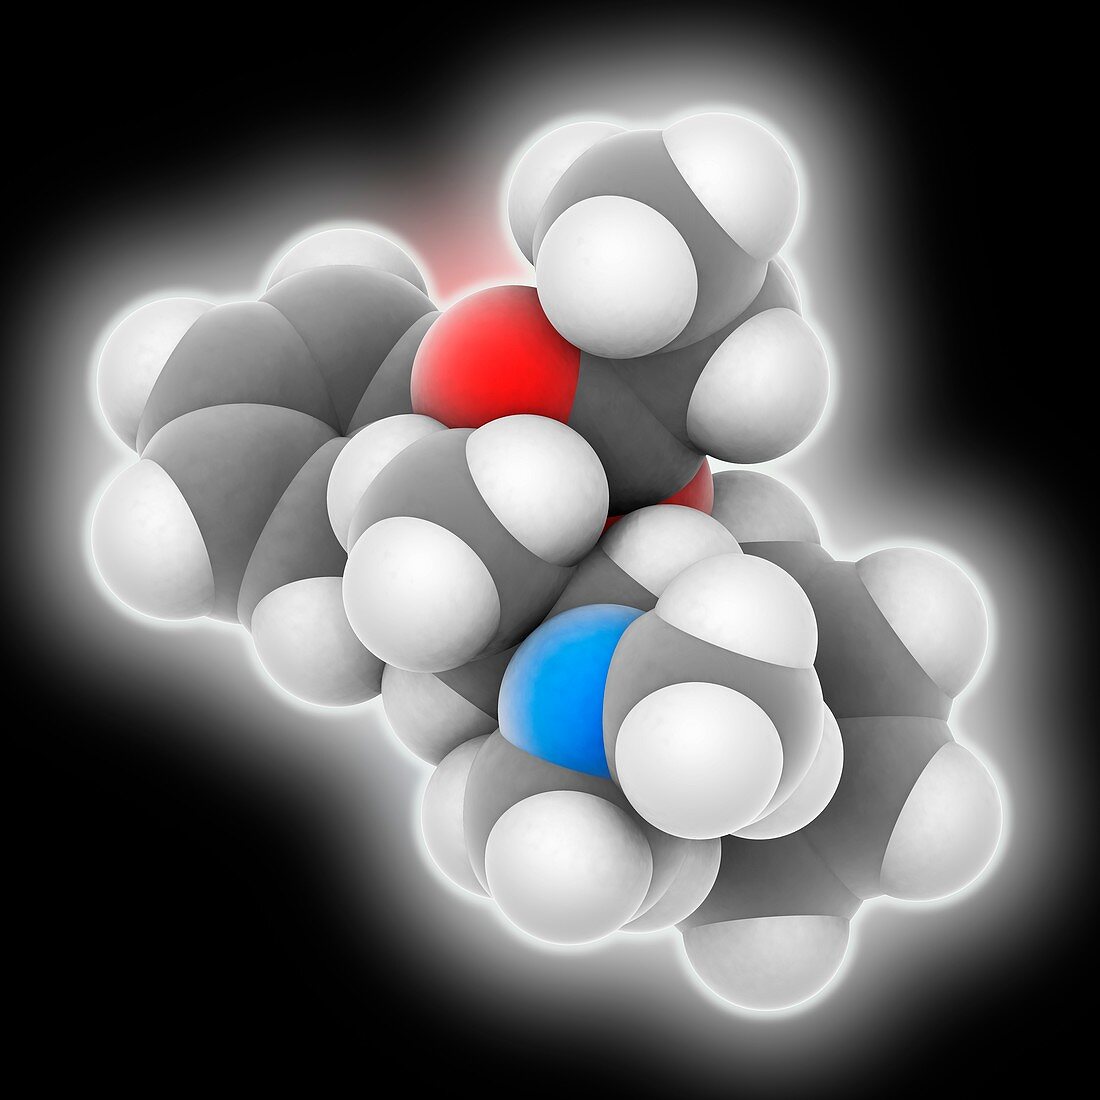 Dextropropoxyphene drug molecule